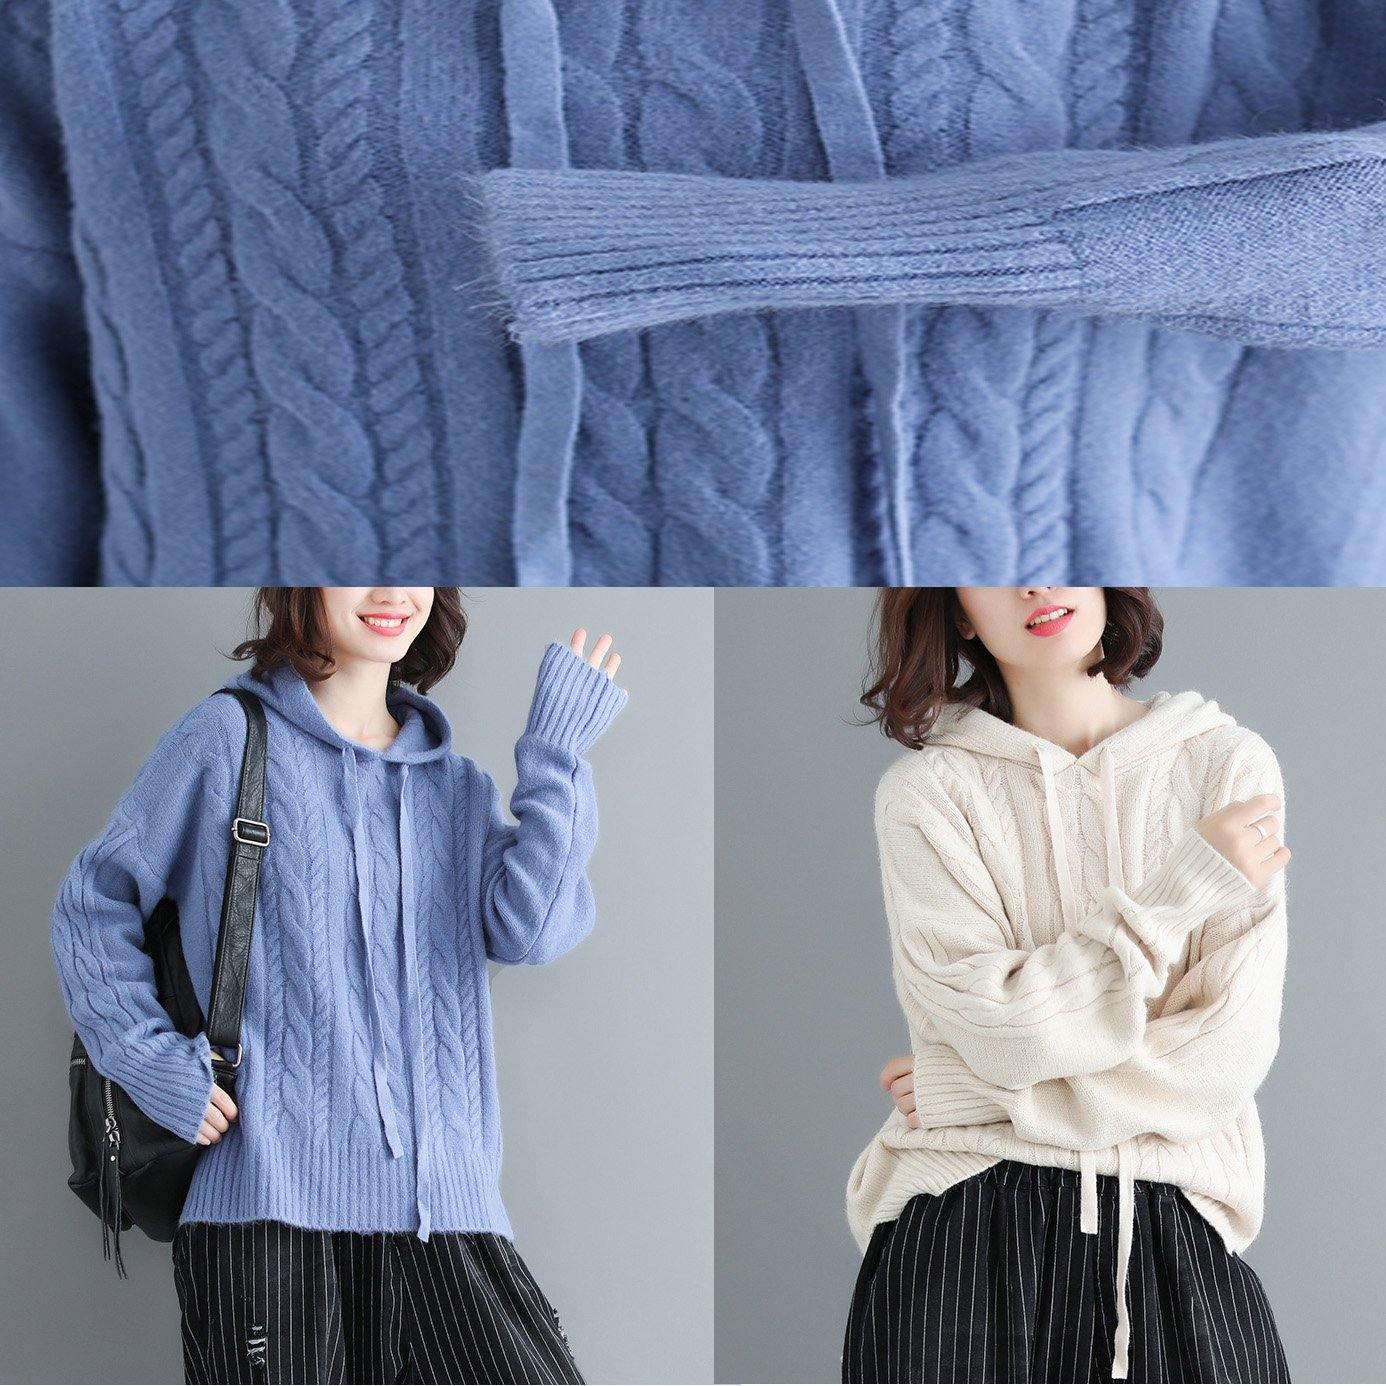 Winter side open knit blouse plus size hooded knitwear blue - Omychic